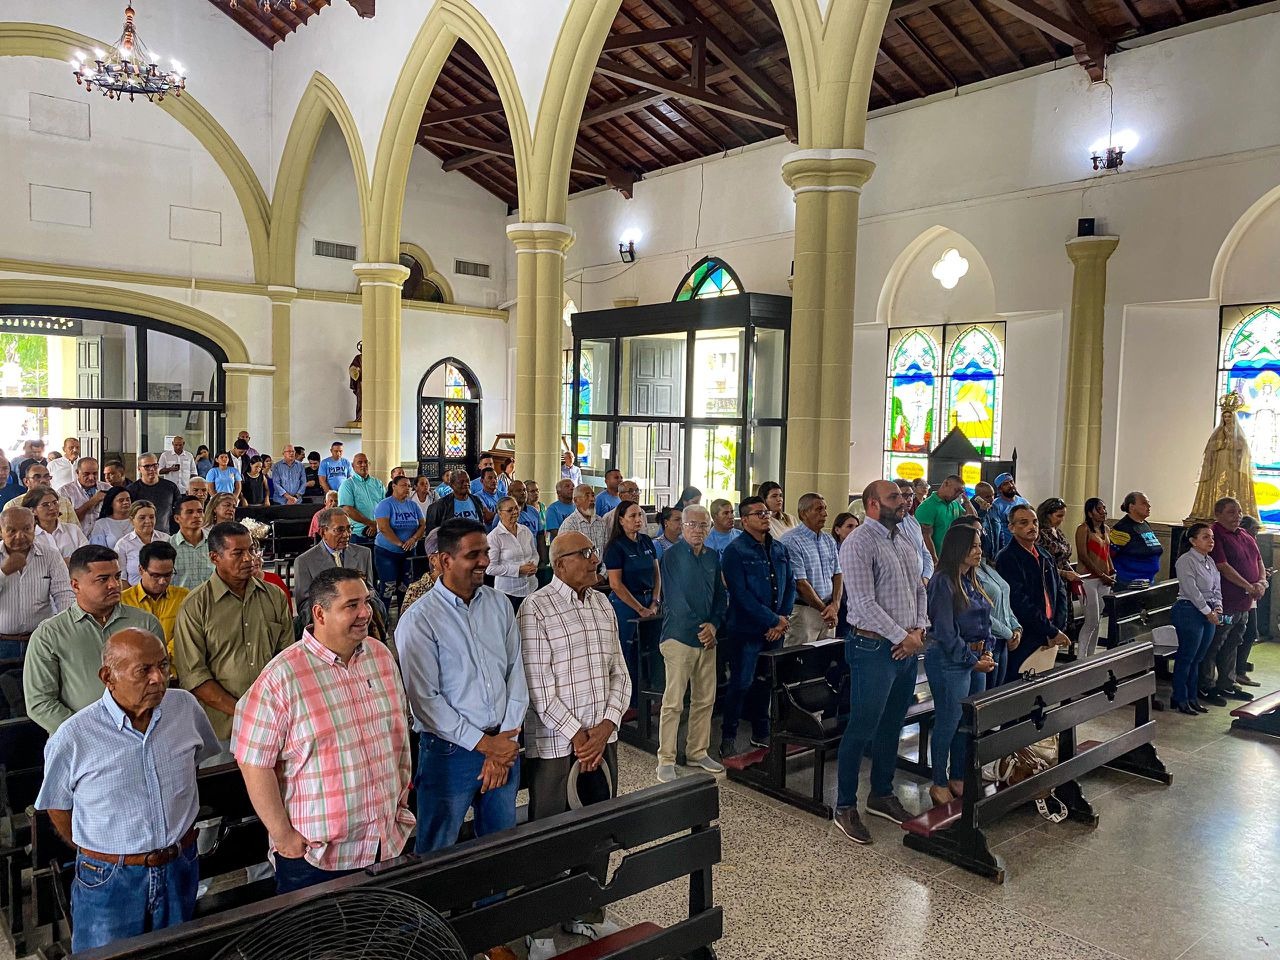 MPV en Monagas celebró su 12 aniversario con paso firme a la libertad y la democracia